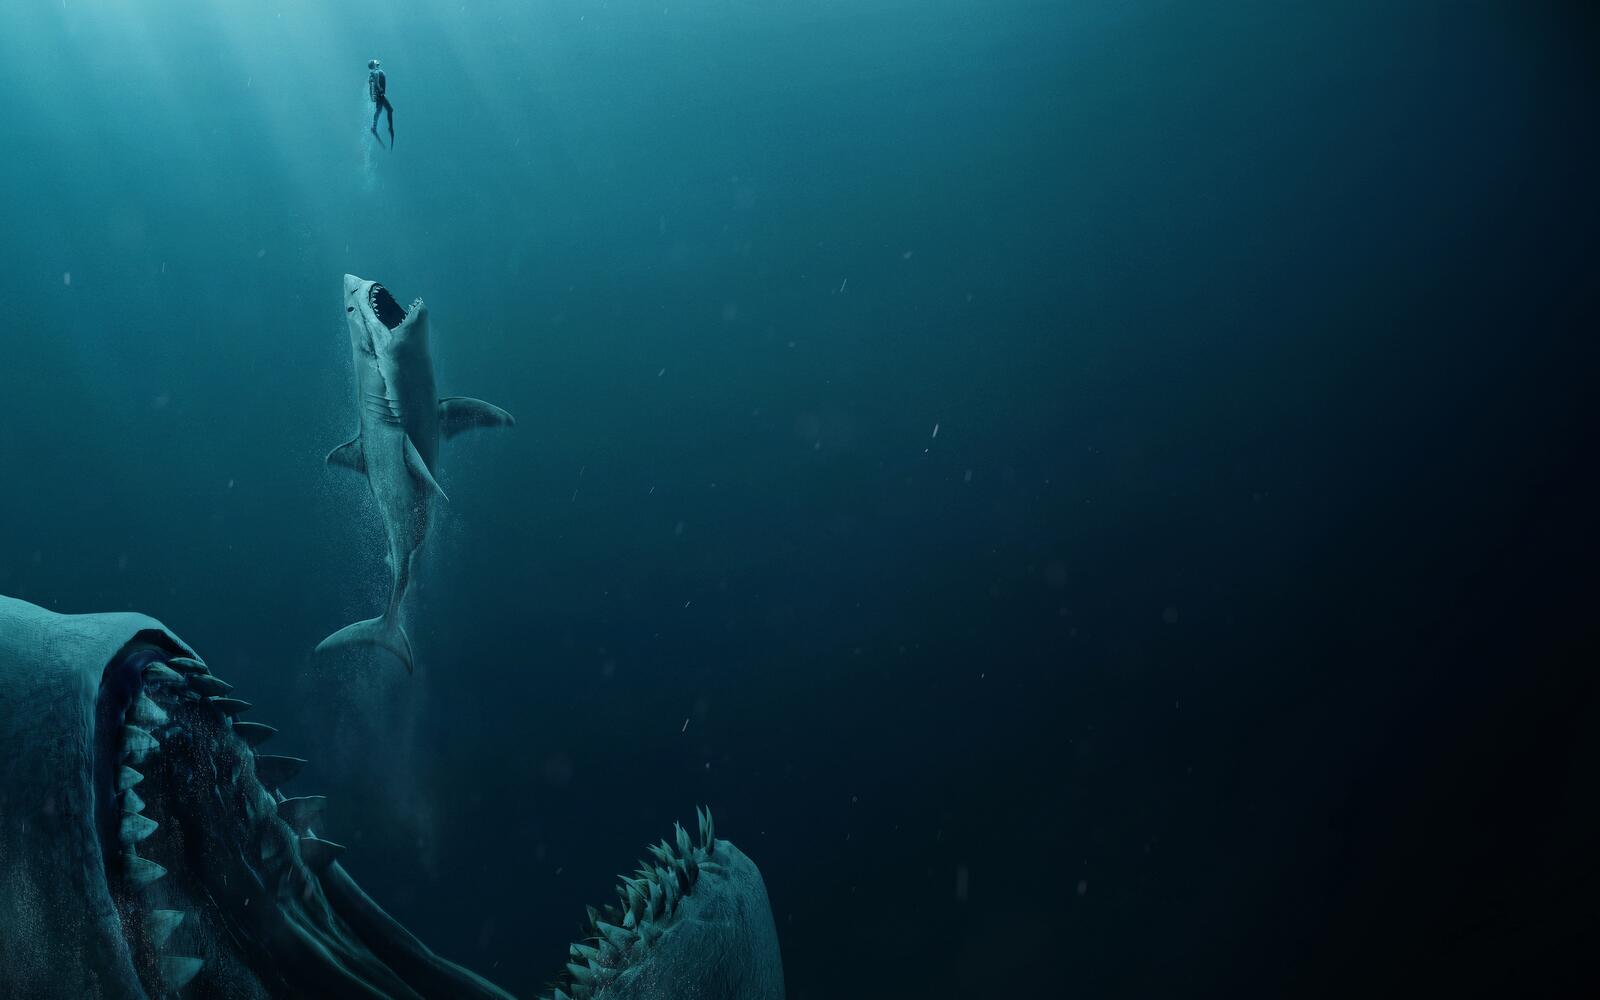 Wallpapers shark underwater wallpaper the Meg 2018 on the desktop